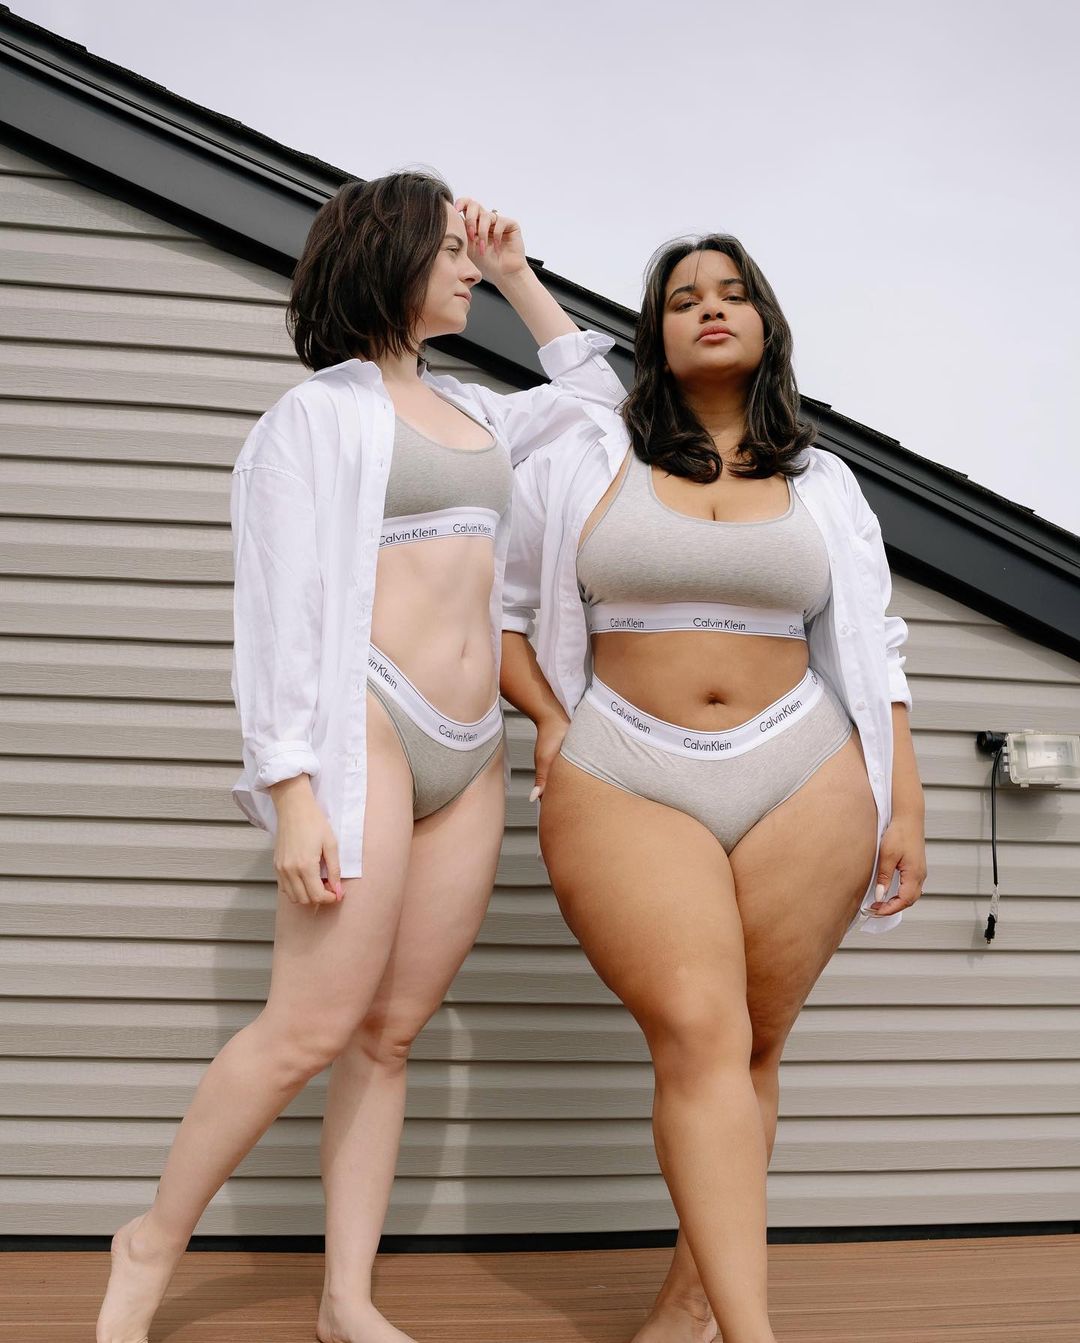 Body Positive Denise Mercedes y María Castellanos |:  Vestirse para impresionar.  dos amigas demuestran que el estilo brilla en todos los cuerpos |  Su belleza: